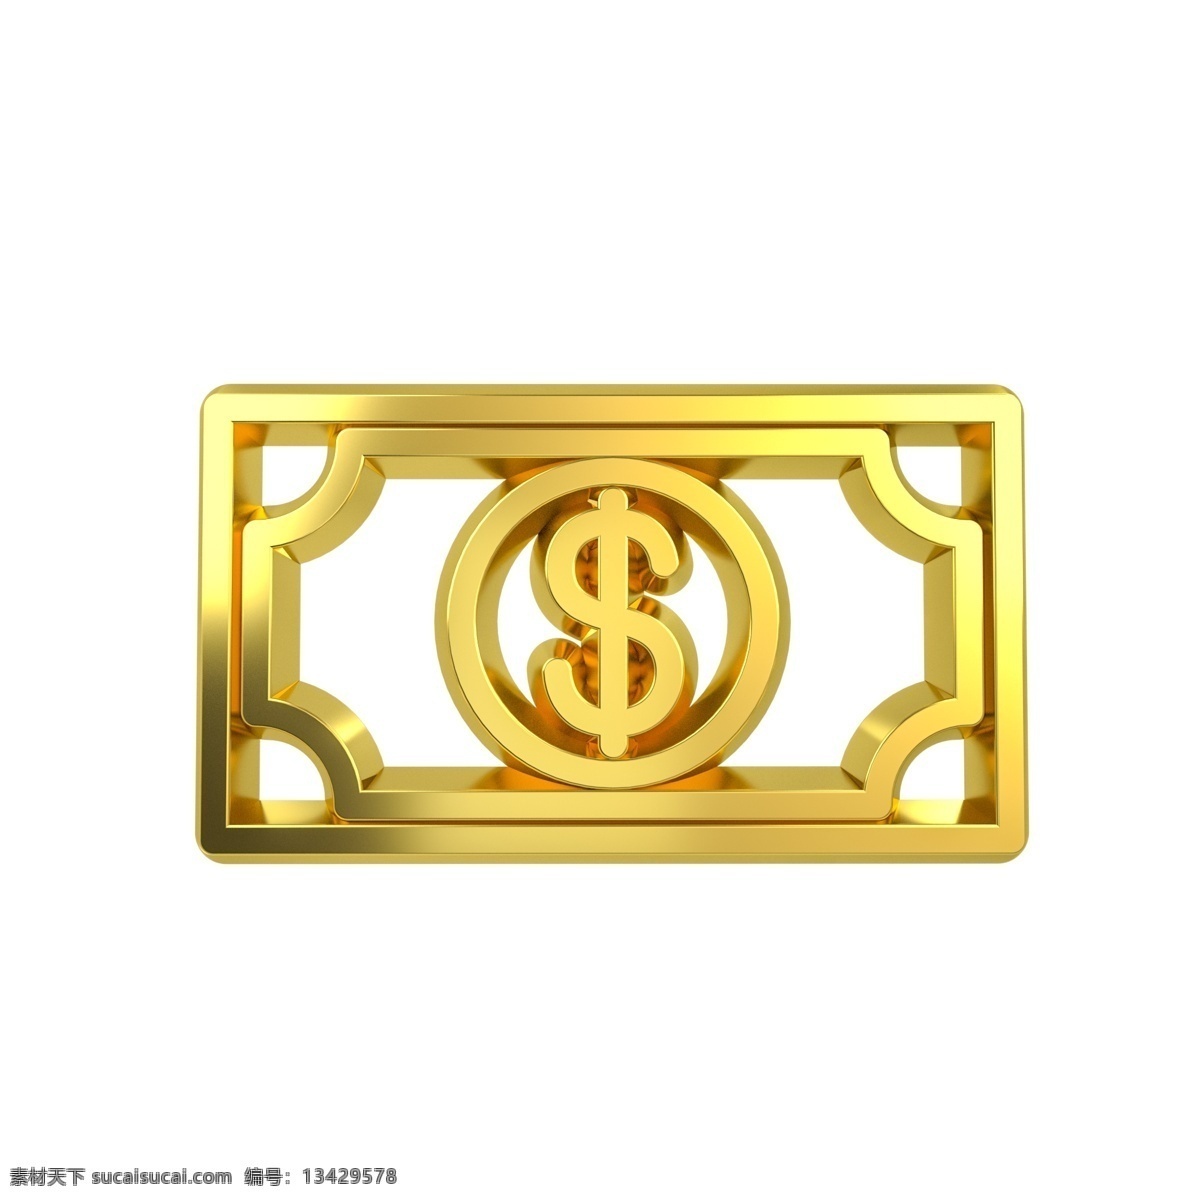 立体 金属 质感 金融类 图标 钱票 c4d 3d 金属质感 金色 金融类图标 通用图标装饰 大气 钱票图标